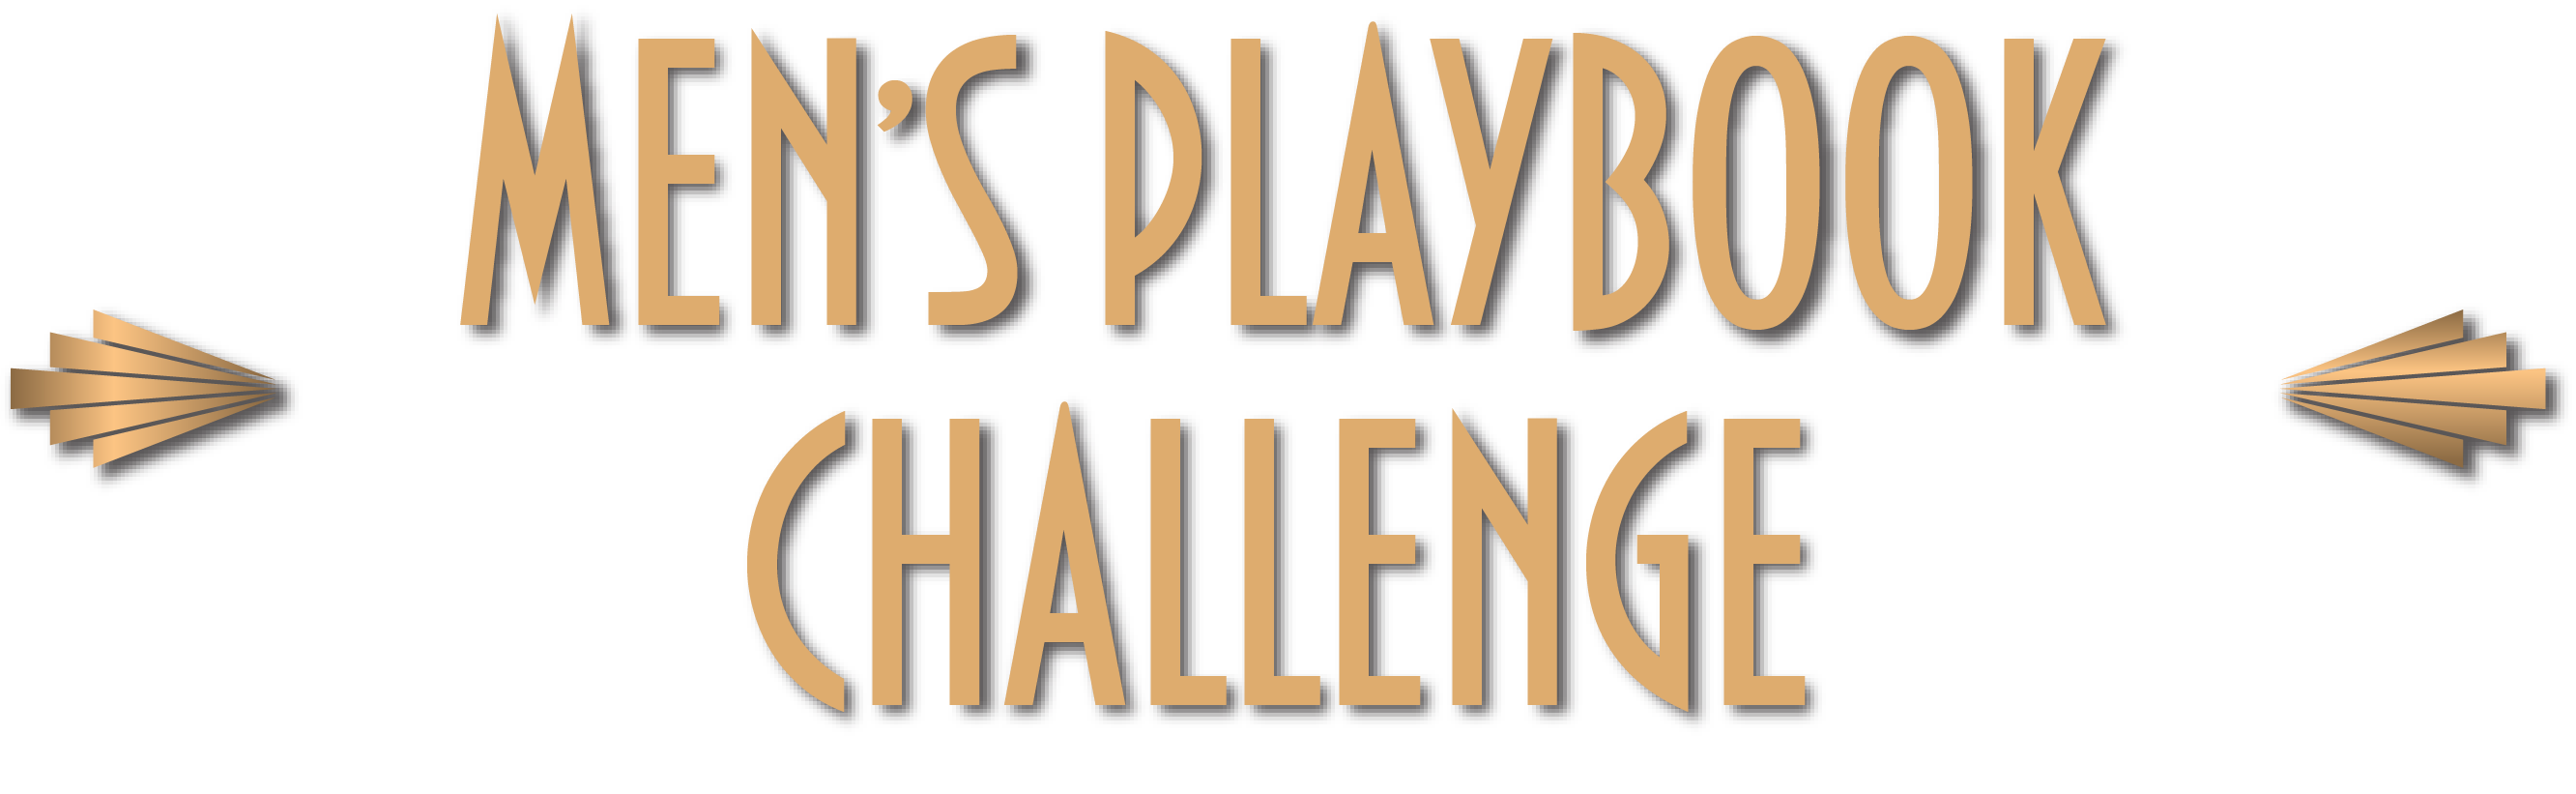 MEN'S PLAYBOOK CHALLENGE